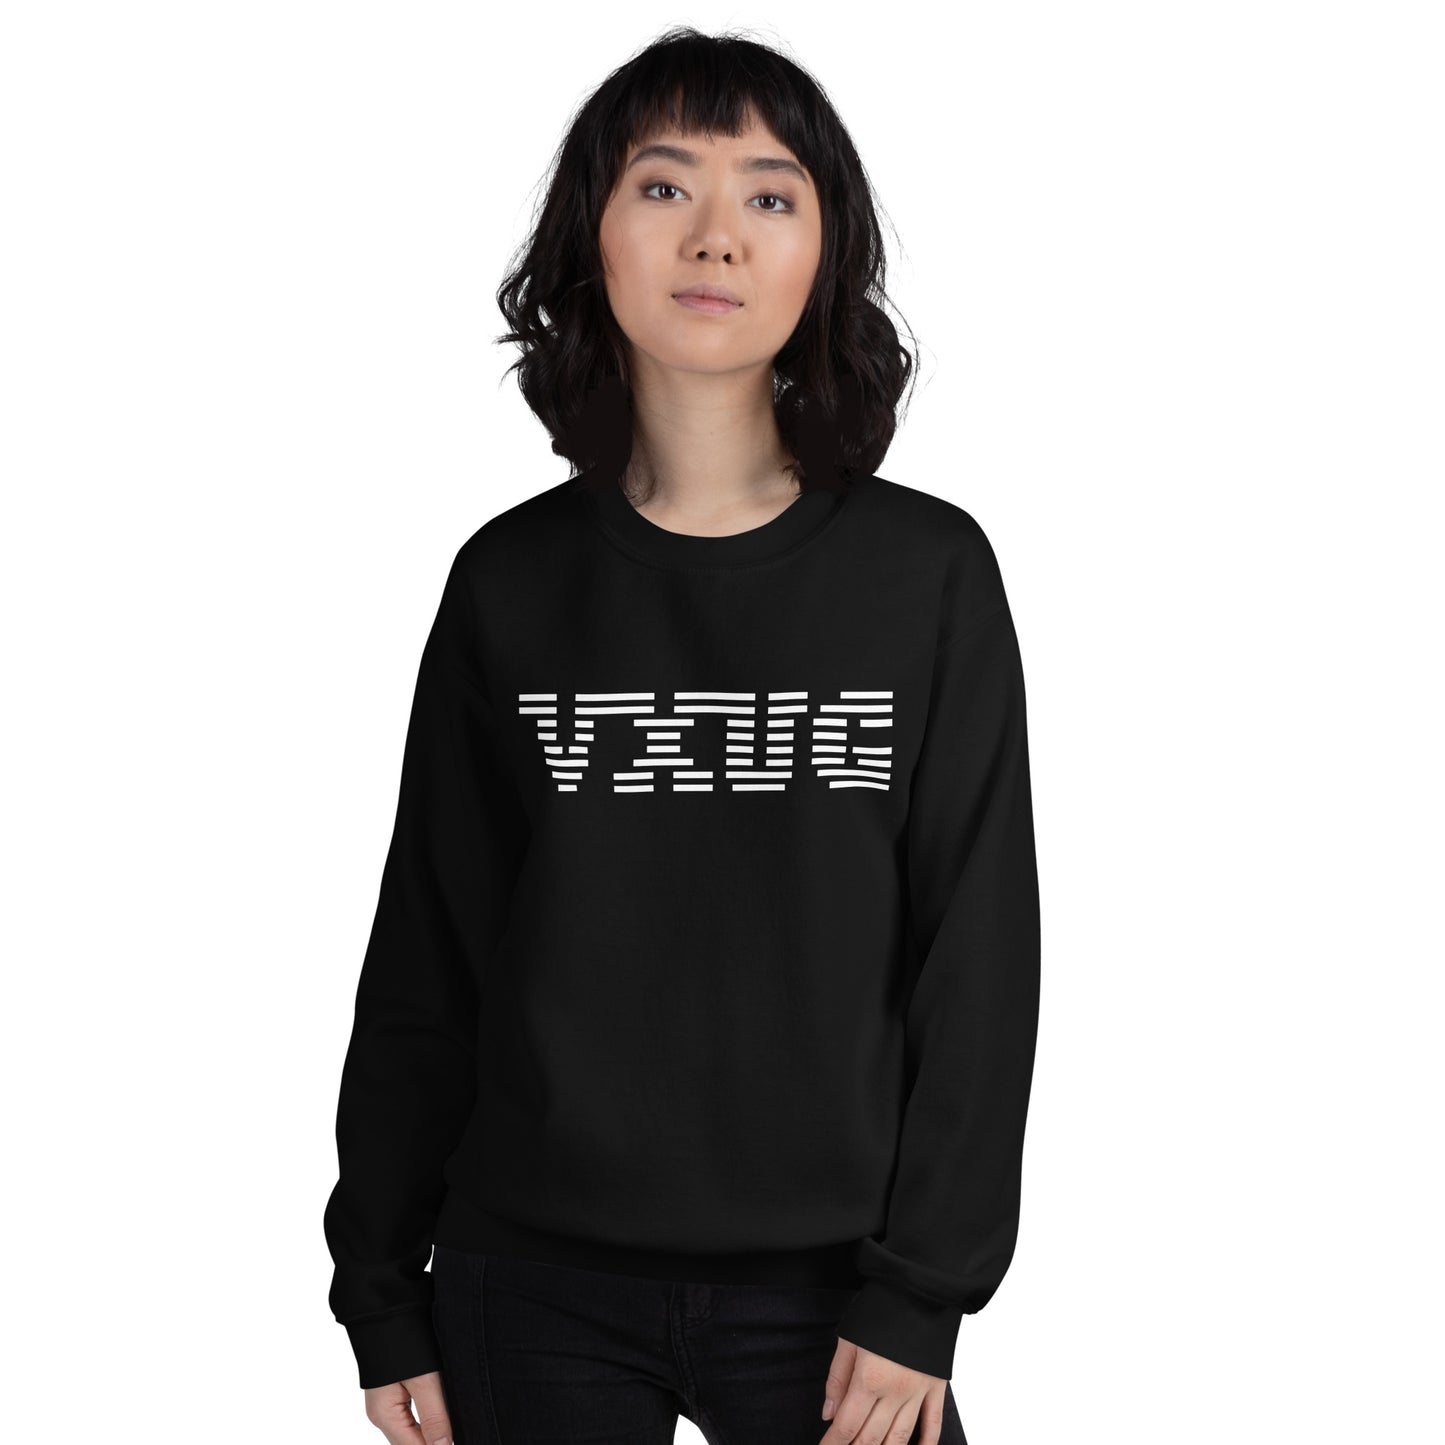 VXUG Corporate Unisex Sweatshirt